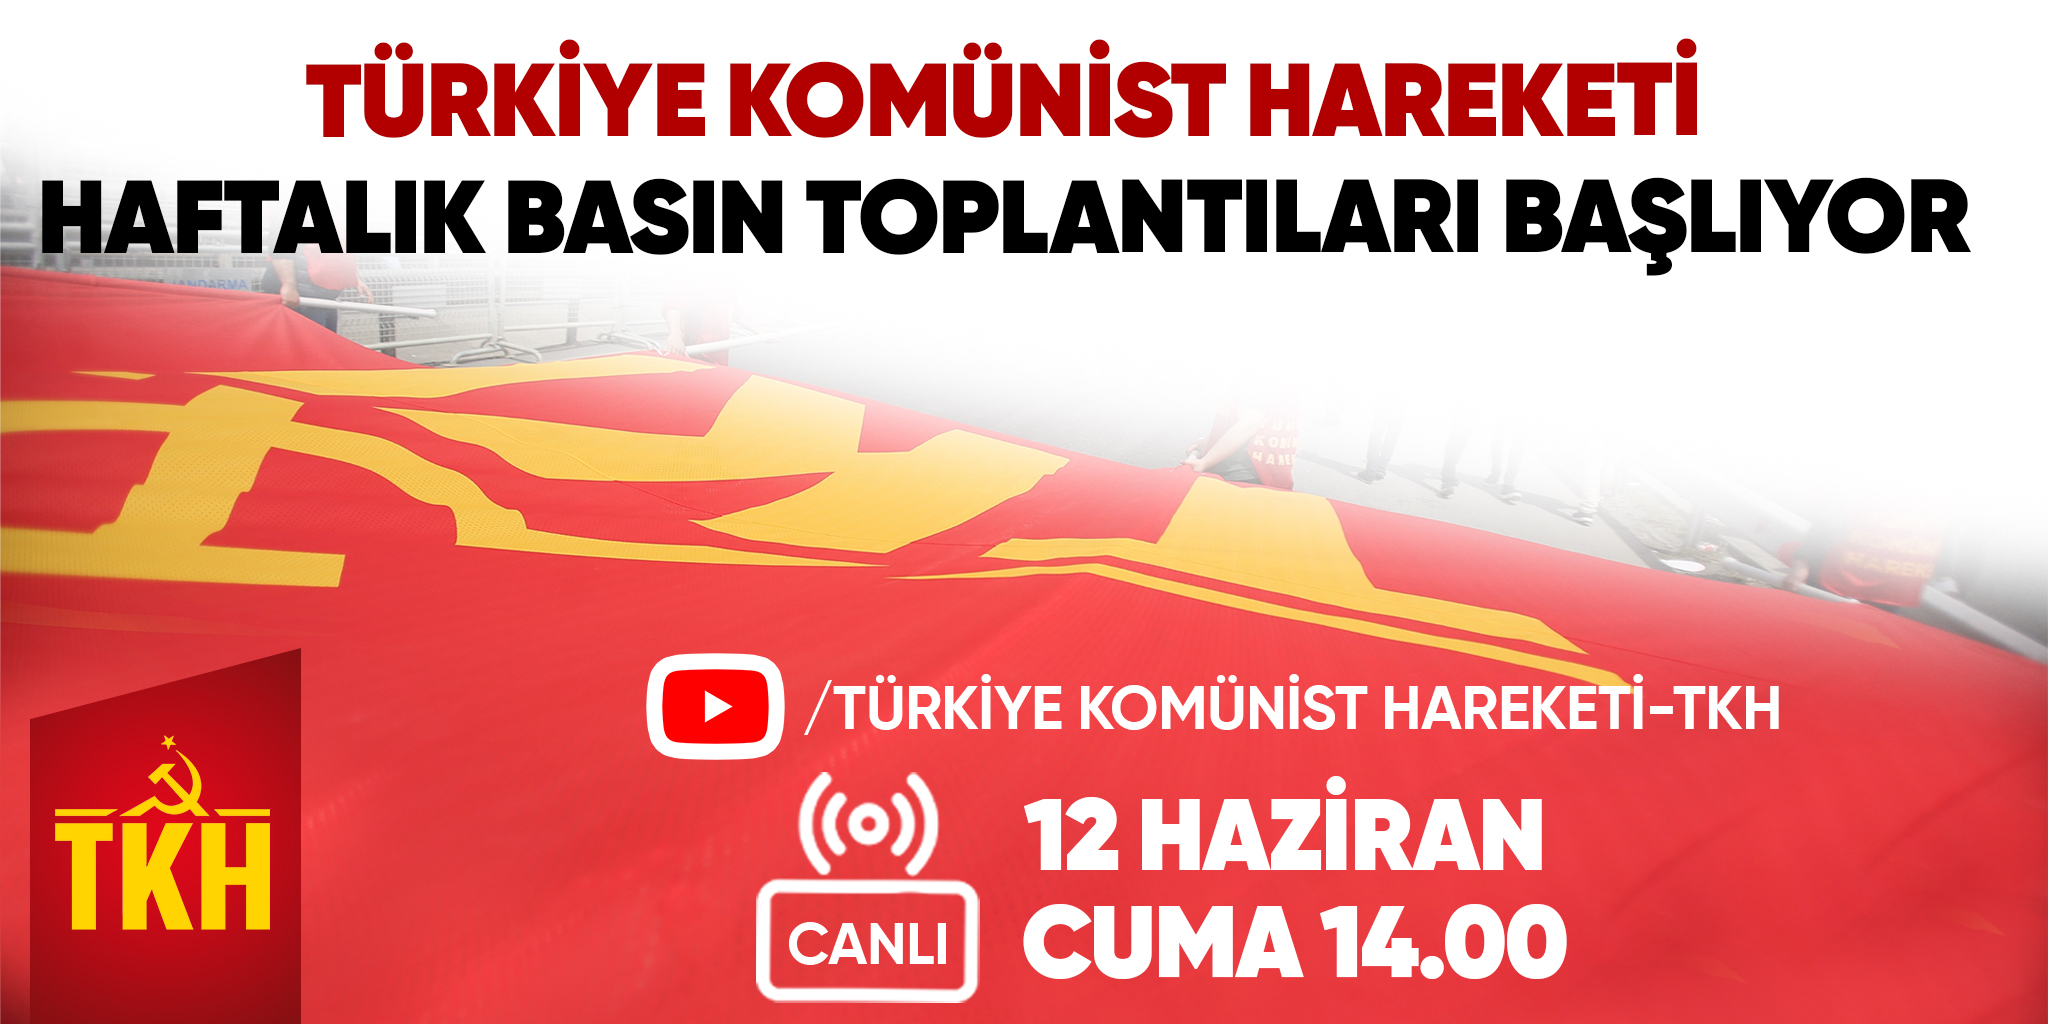 Türkiye Komünist Hareketi Haftalık Basın Toplantıları başlıyor